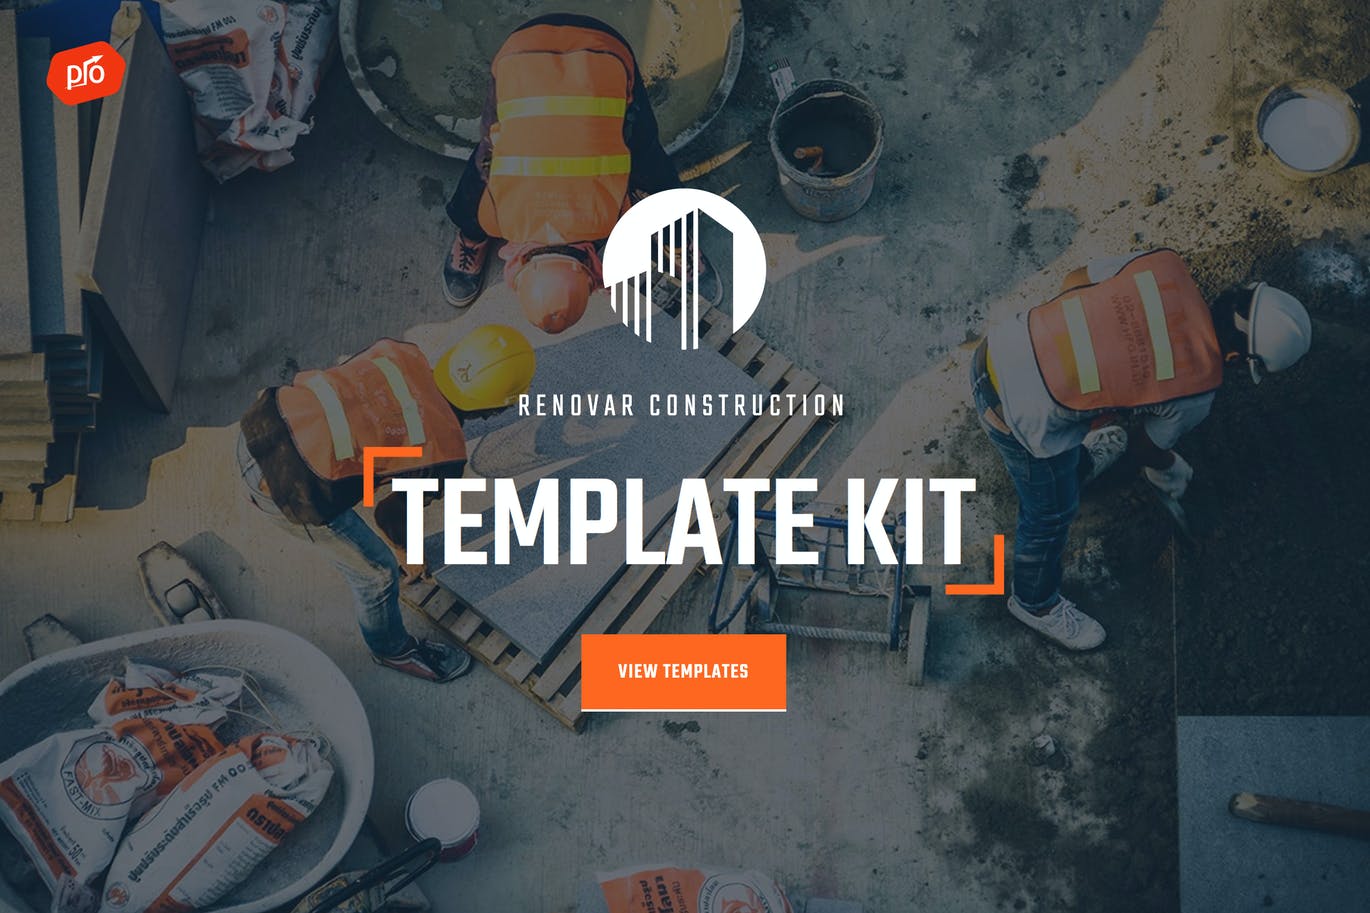 独特专业建筑系列Renovar构建WordPress模板套件 Renovar – Construction Template Kit